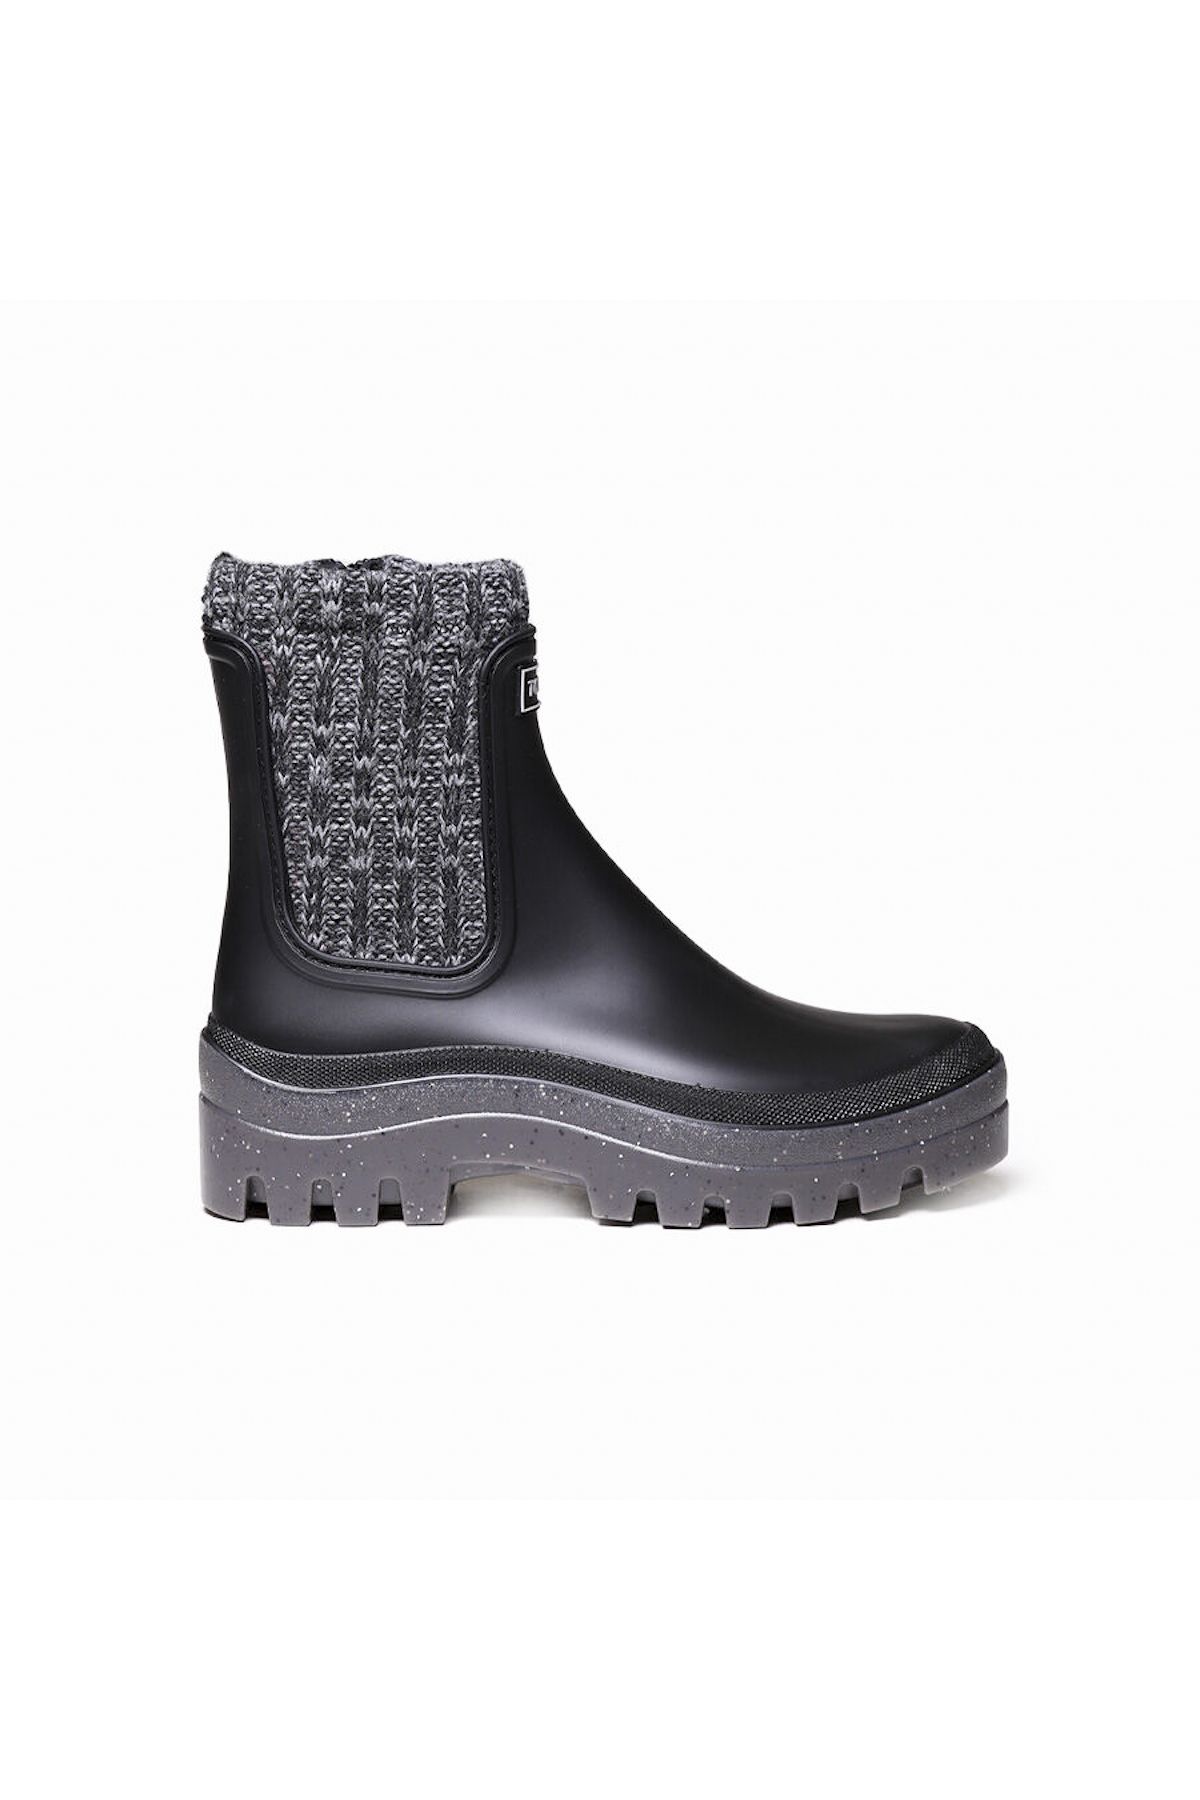 Toni Pons Kadın Yağmur Botu Camos Rain Ankle Boot In Negre (BLACK)